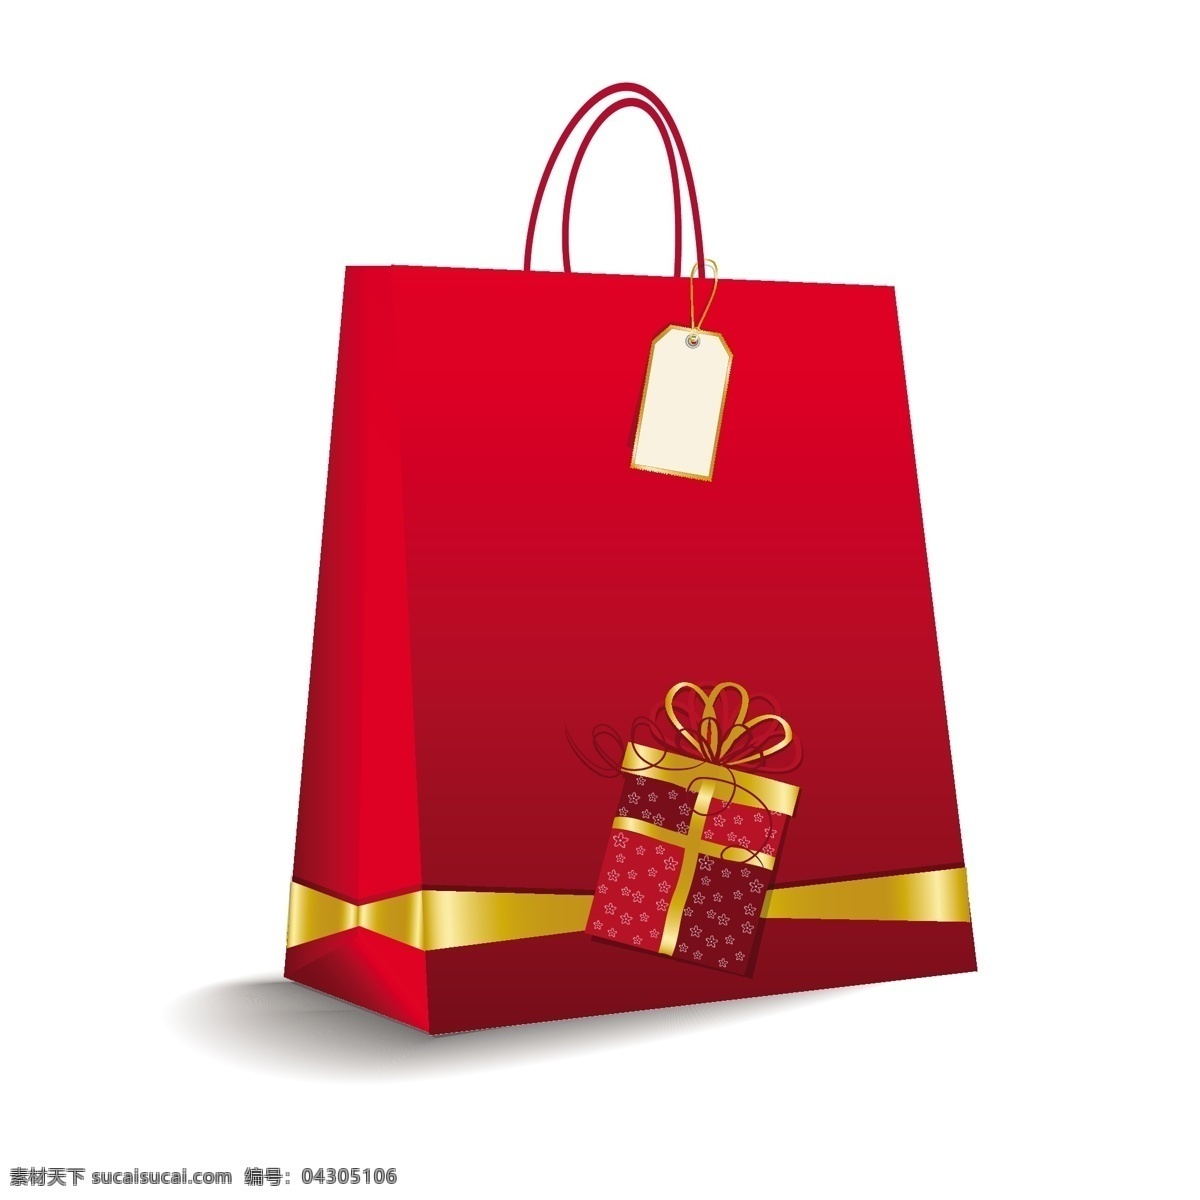 红色的圣诞袋 圣诞节 标签 金徽章 礼品 冬天 红色 蝴蝶结 袋 庆典 节日 目前 金 礼物 圣诞礼物 标记 环 白色